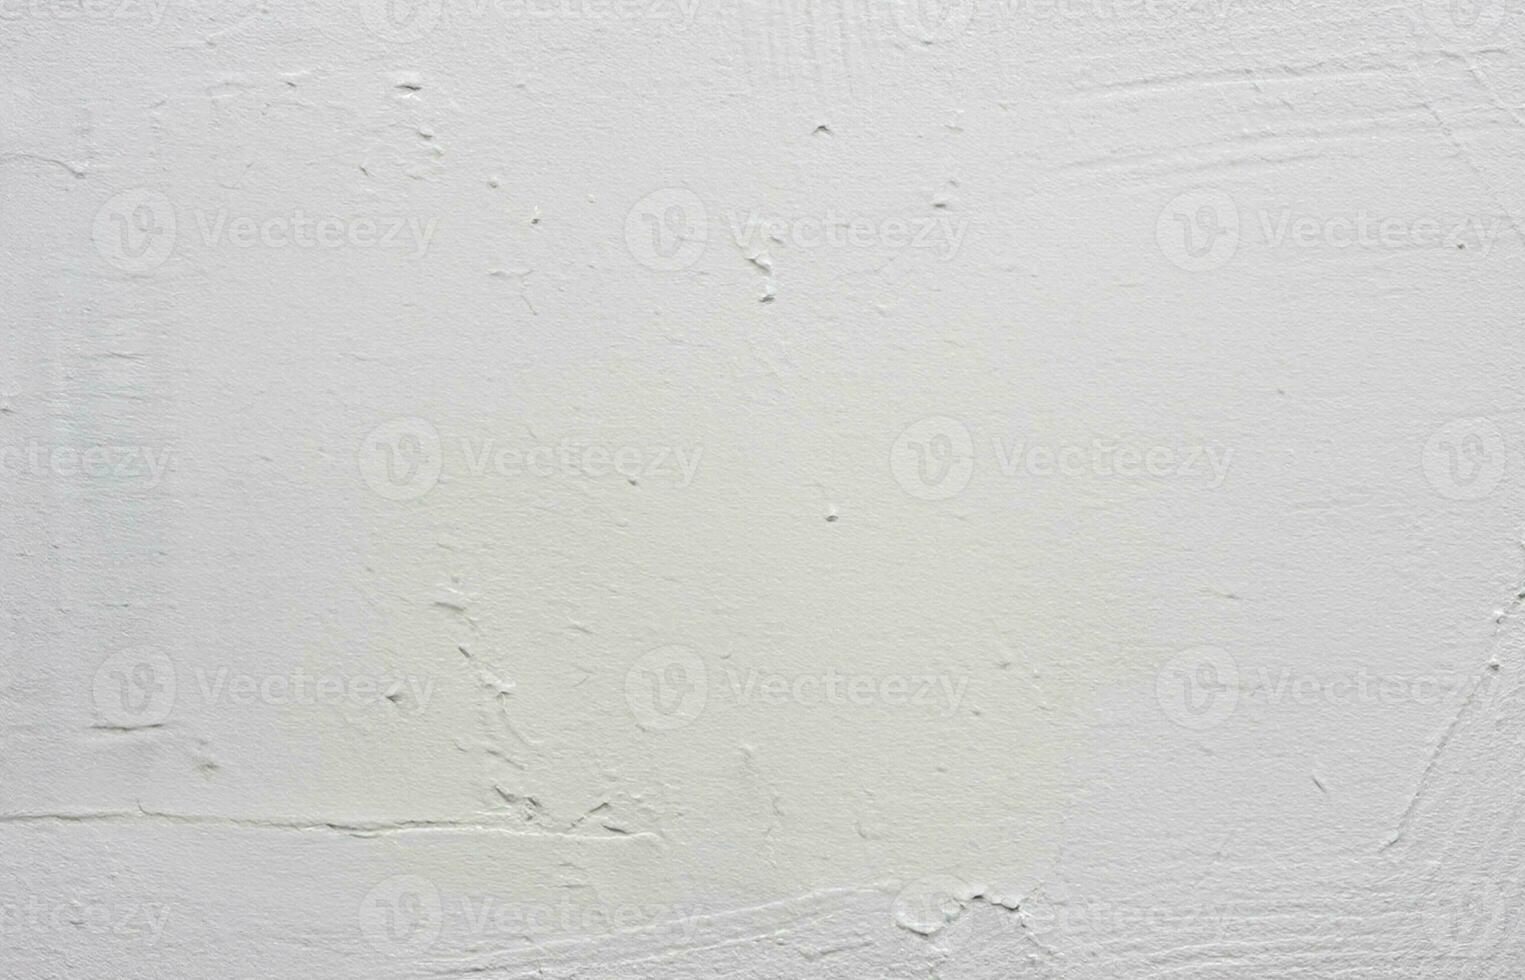 vit målad vägg textur bakgrund foto